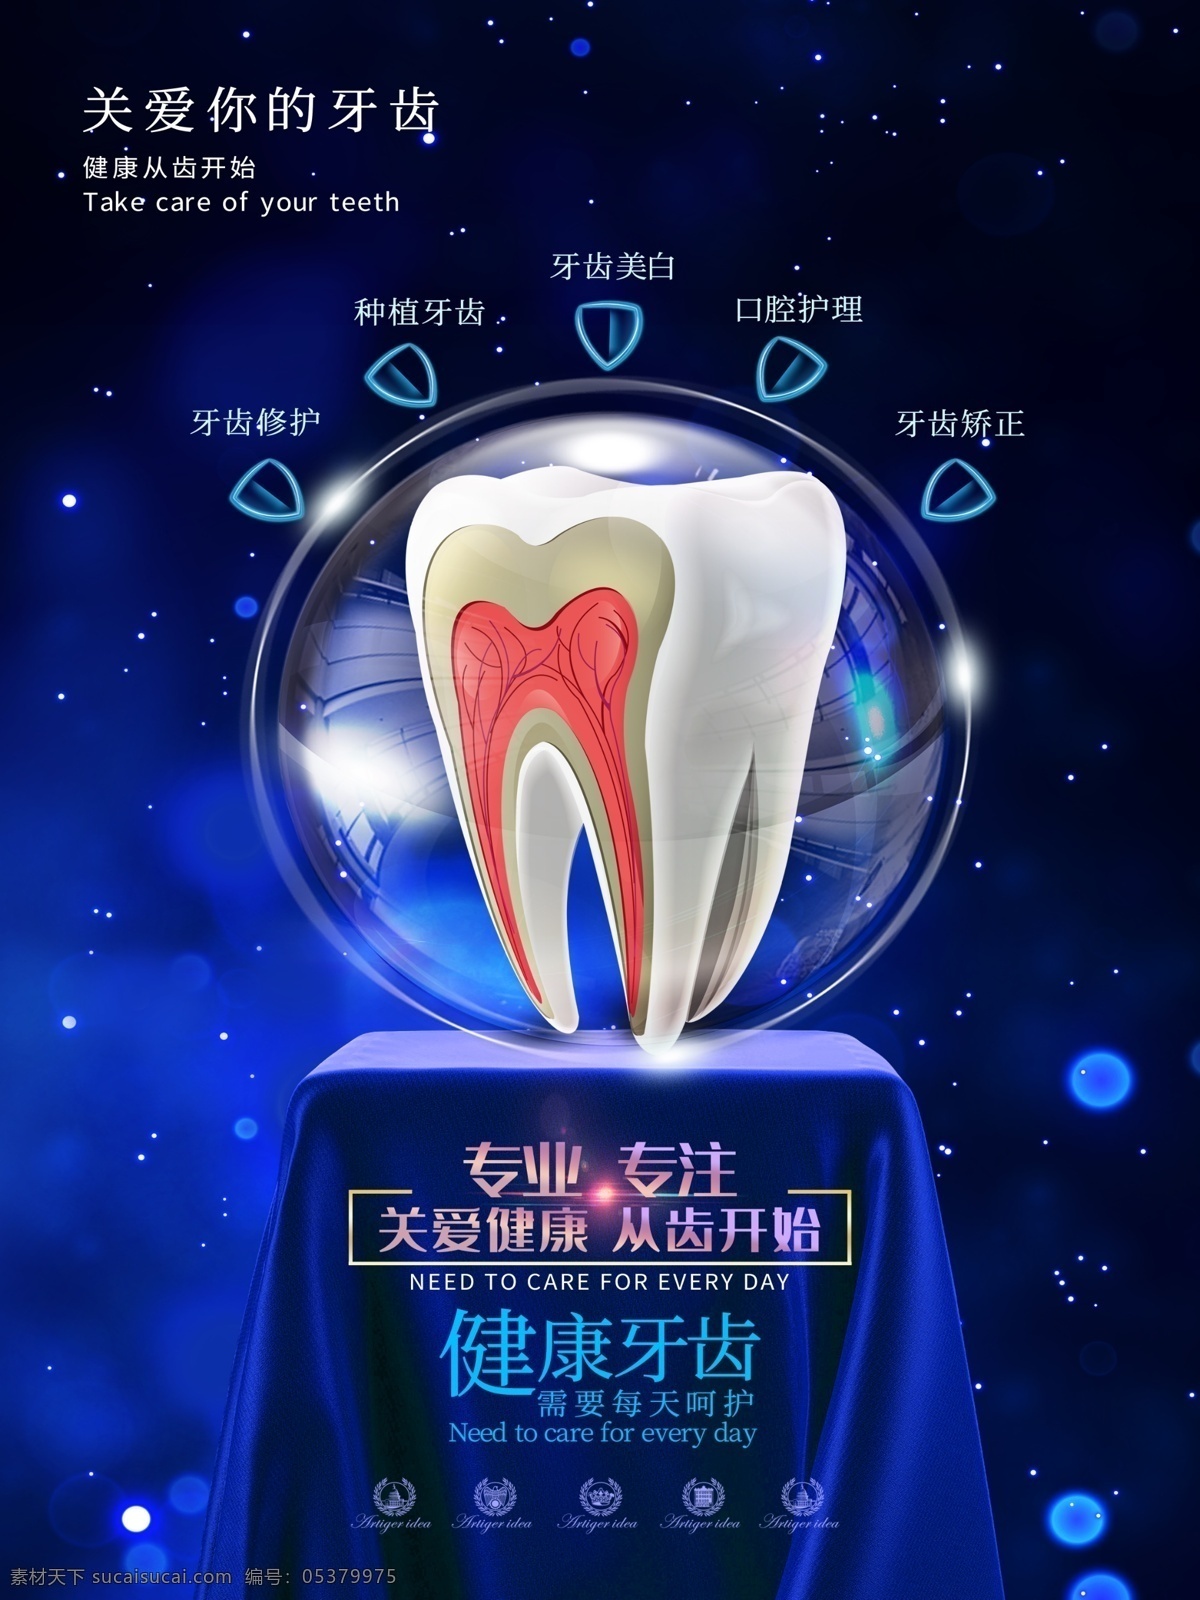 原创 关爱 牙齿 健康 宣传海报 关爱牙齿 牙齿健康 健康牙齿 爱齿 护齿 宣传 展板 商业海报